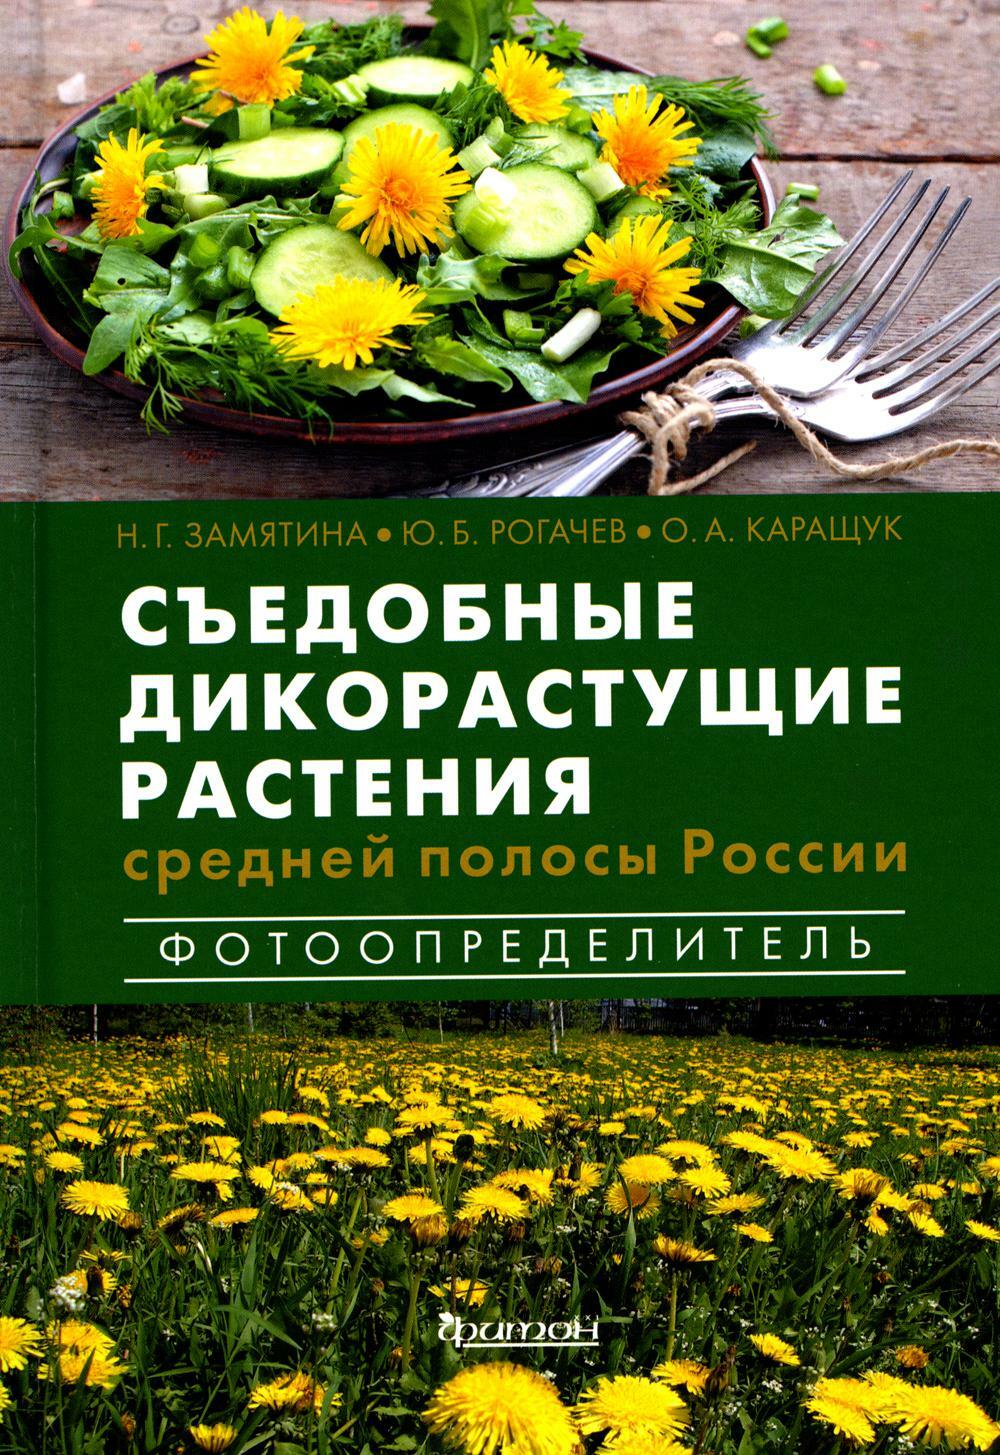 Съедобные дикорастущие растения средней полосы России. Фотоопределитель